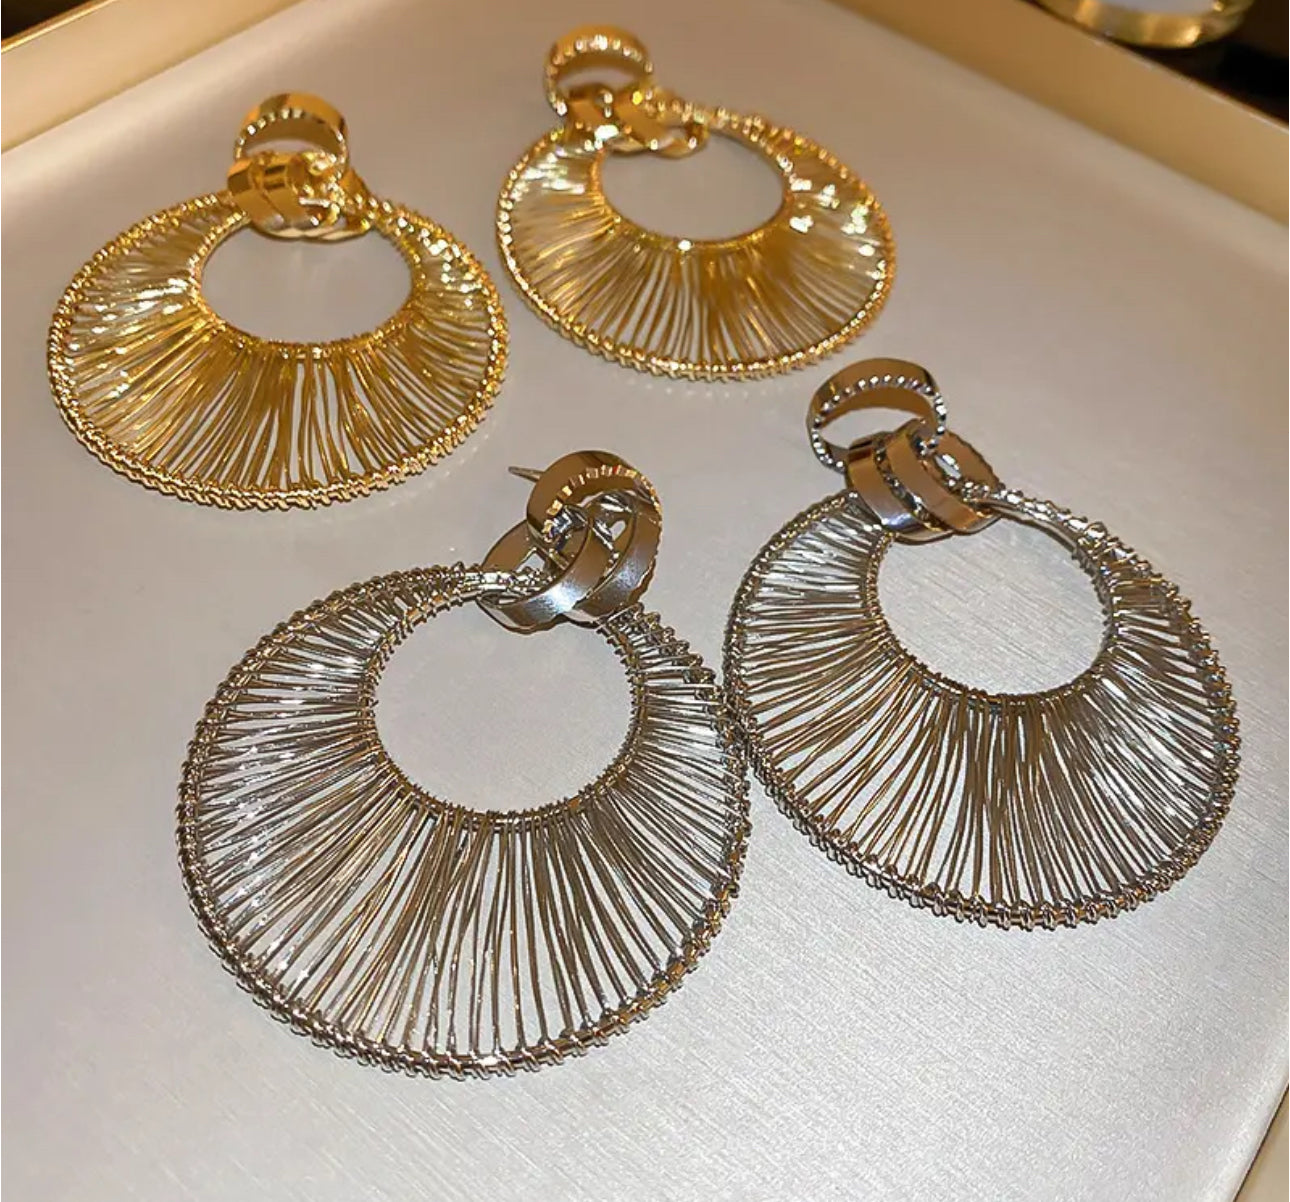 Awu Fan Earrings